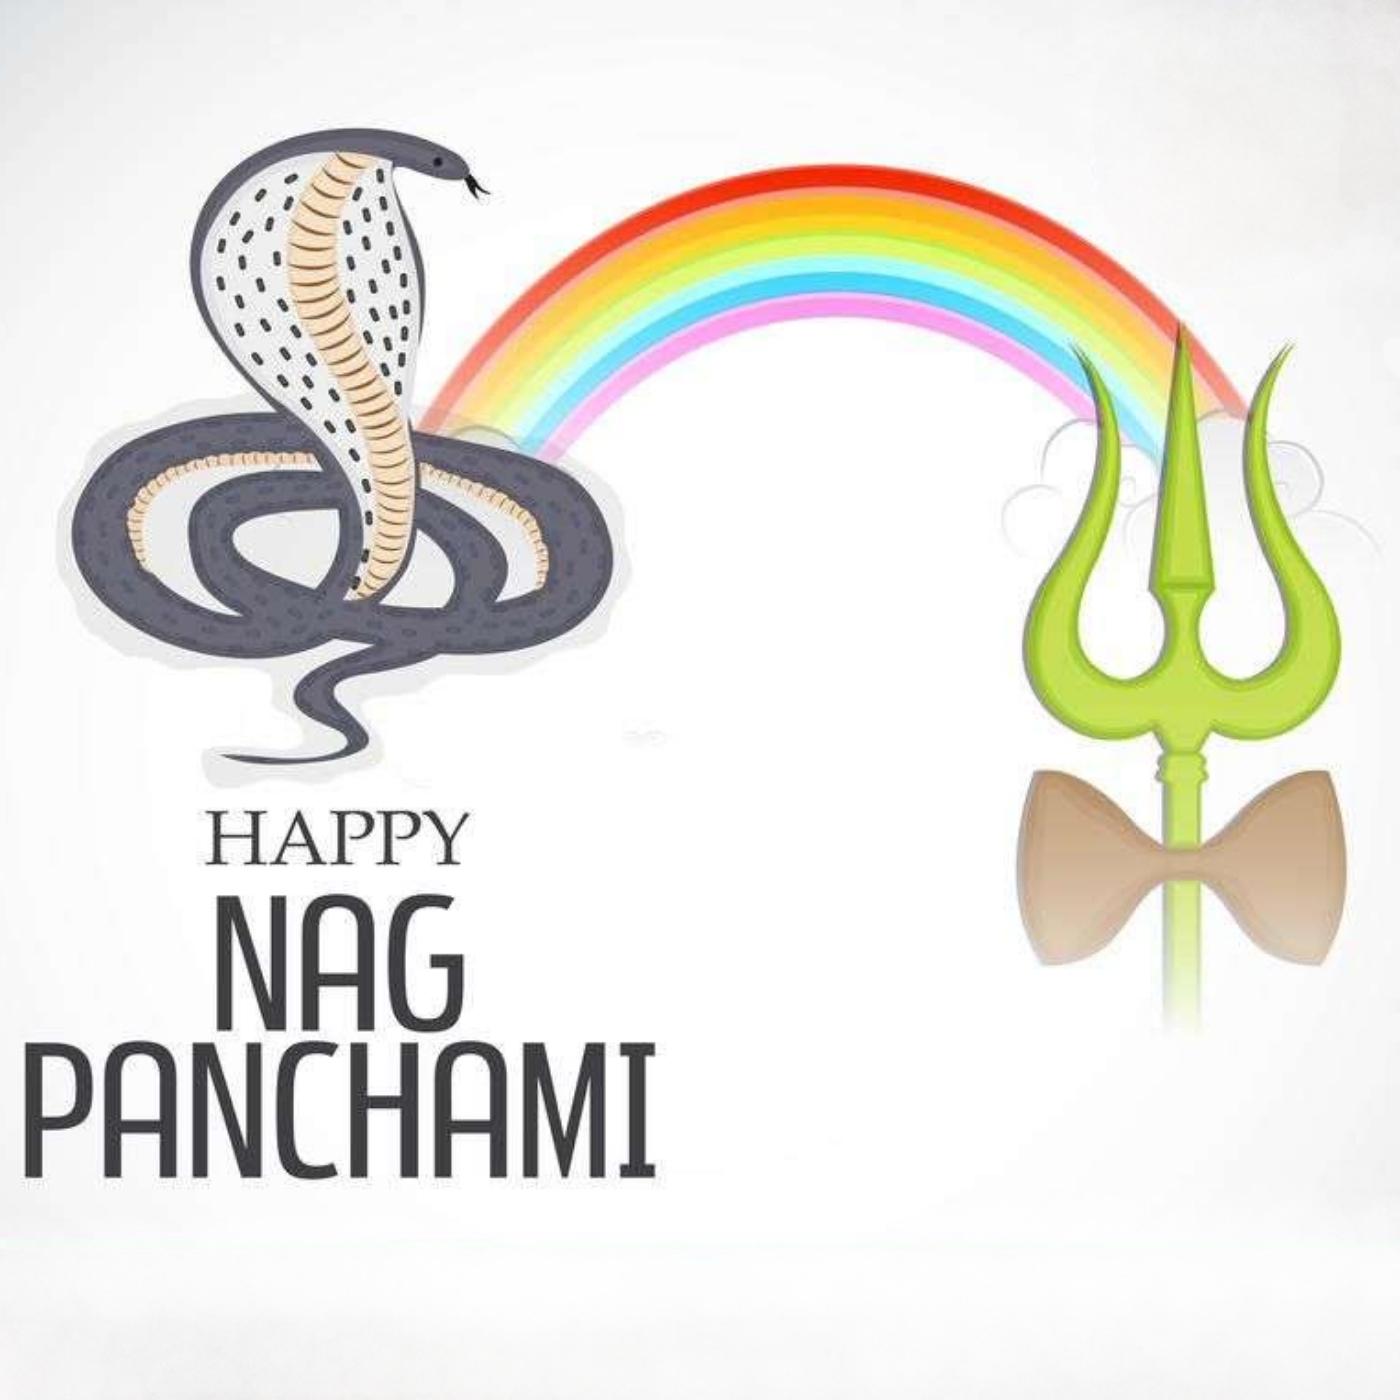 Happy Nag Panchami Special Image